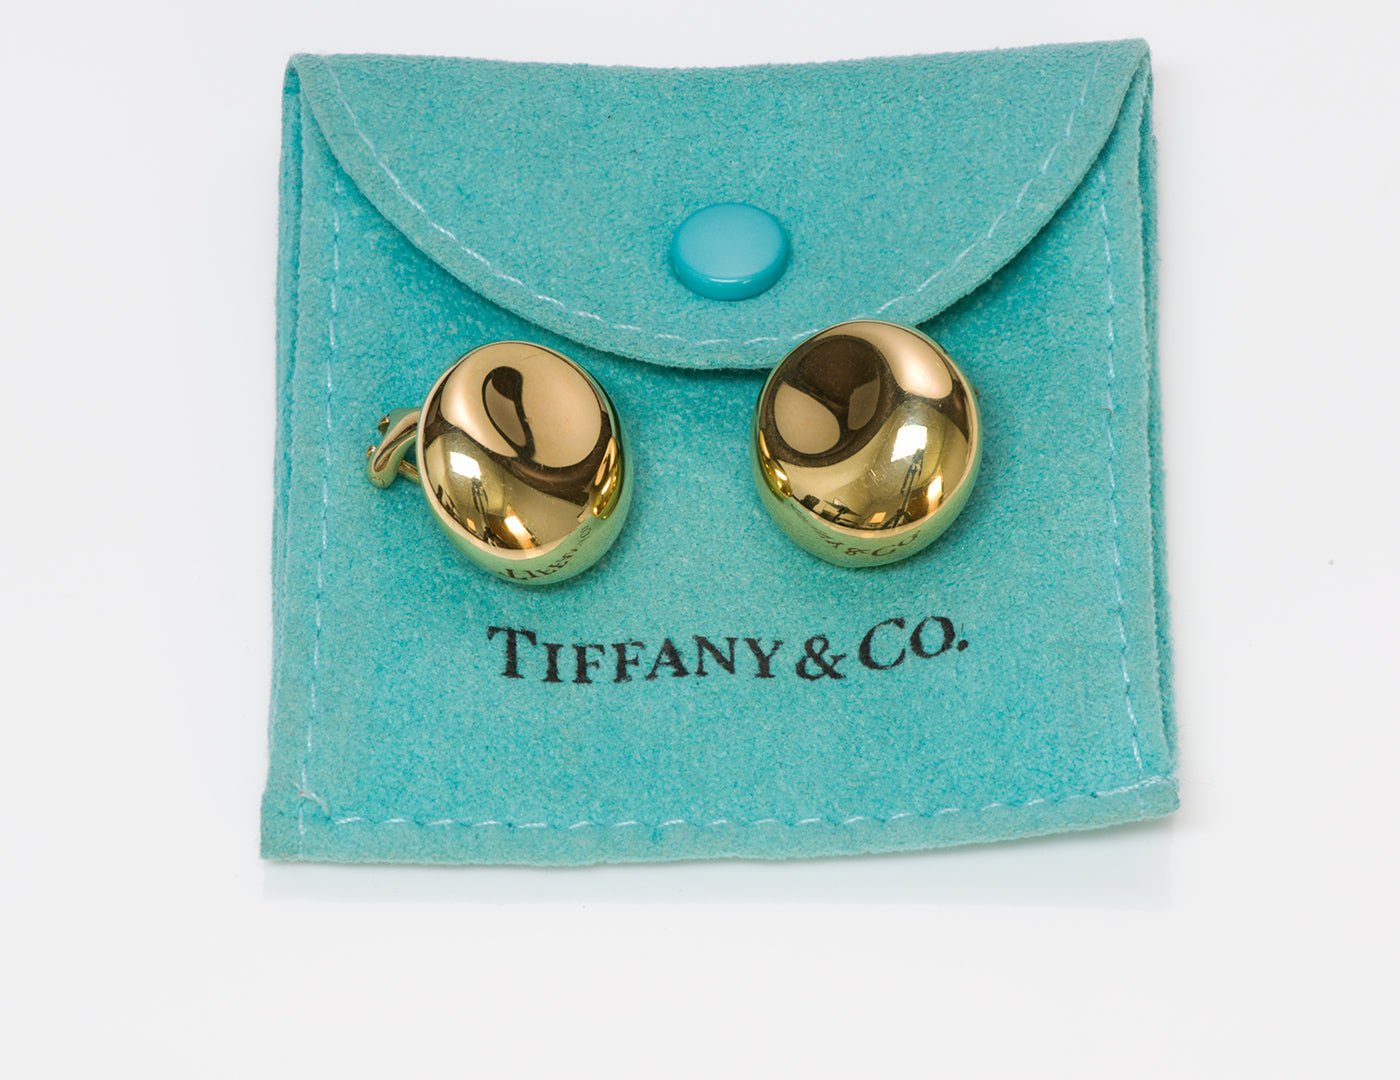 Tiffany & Co. Elsa Peretti Thumbprint 18K Gold Earrings